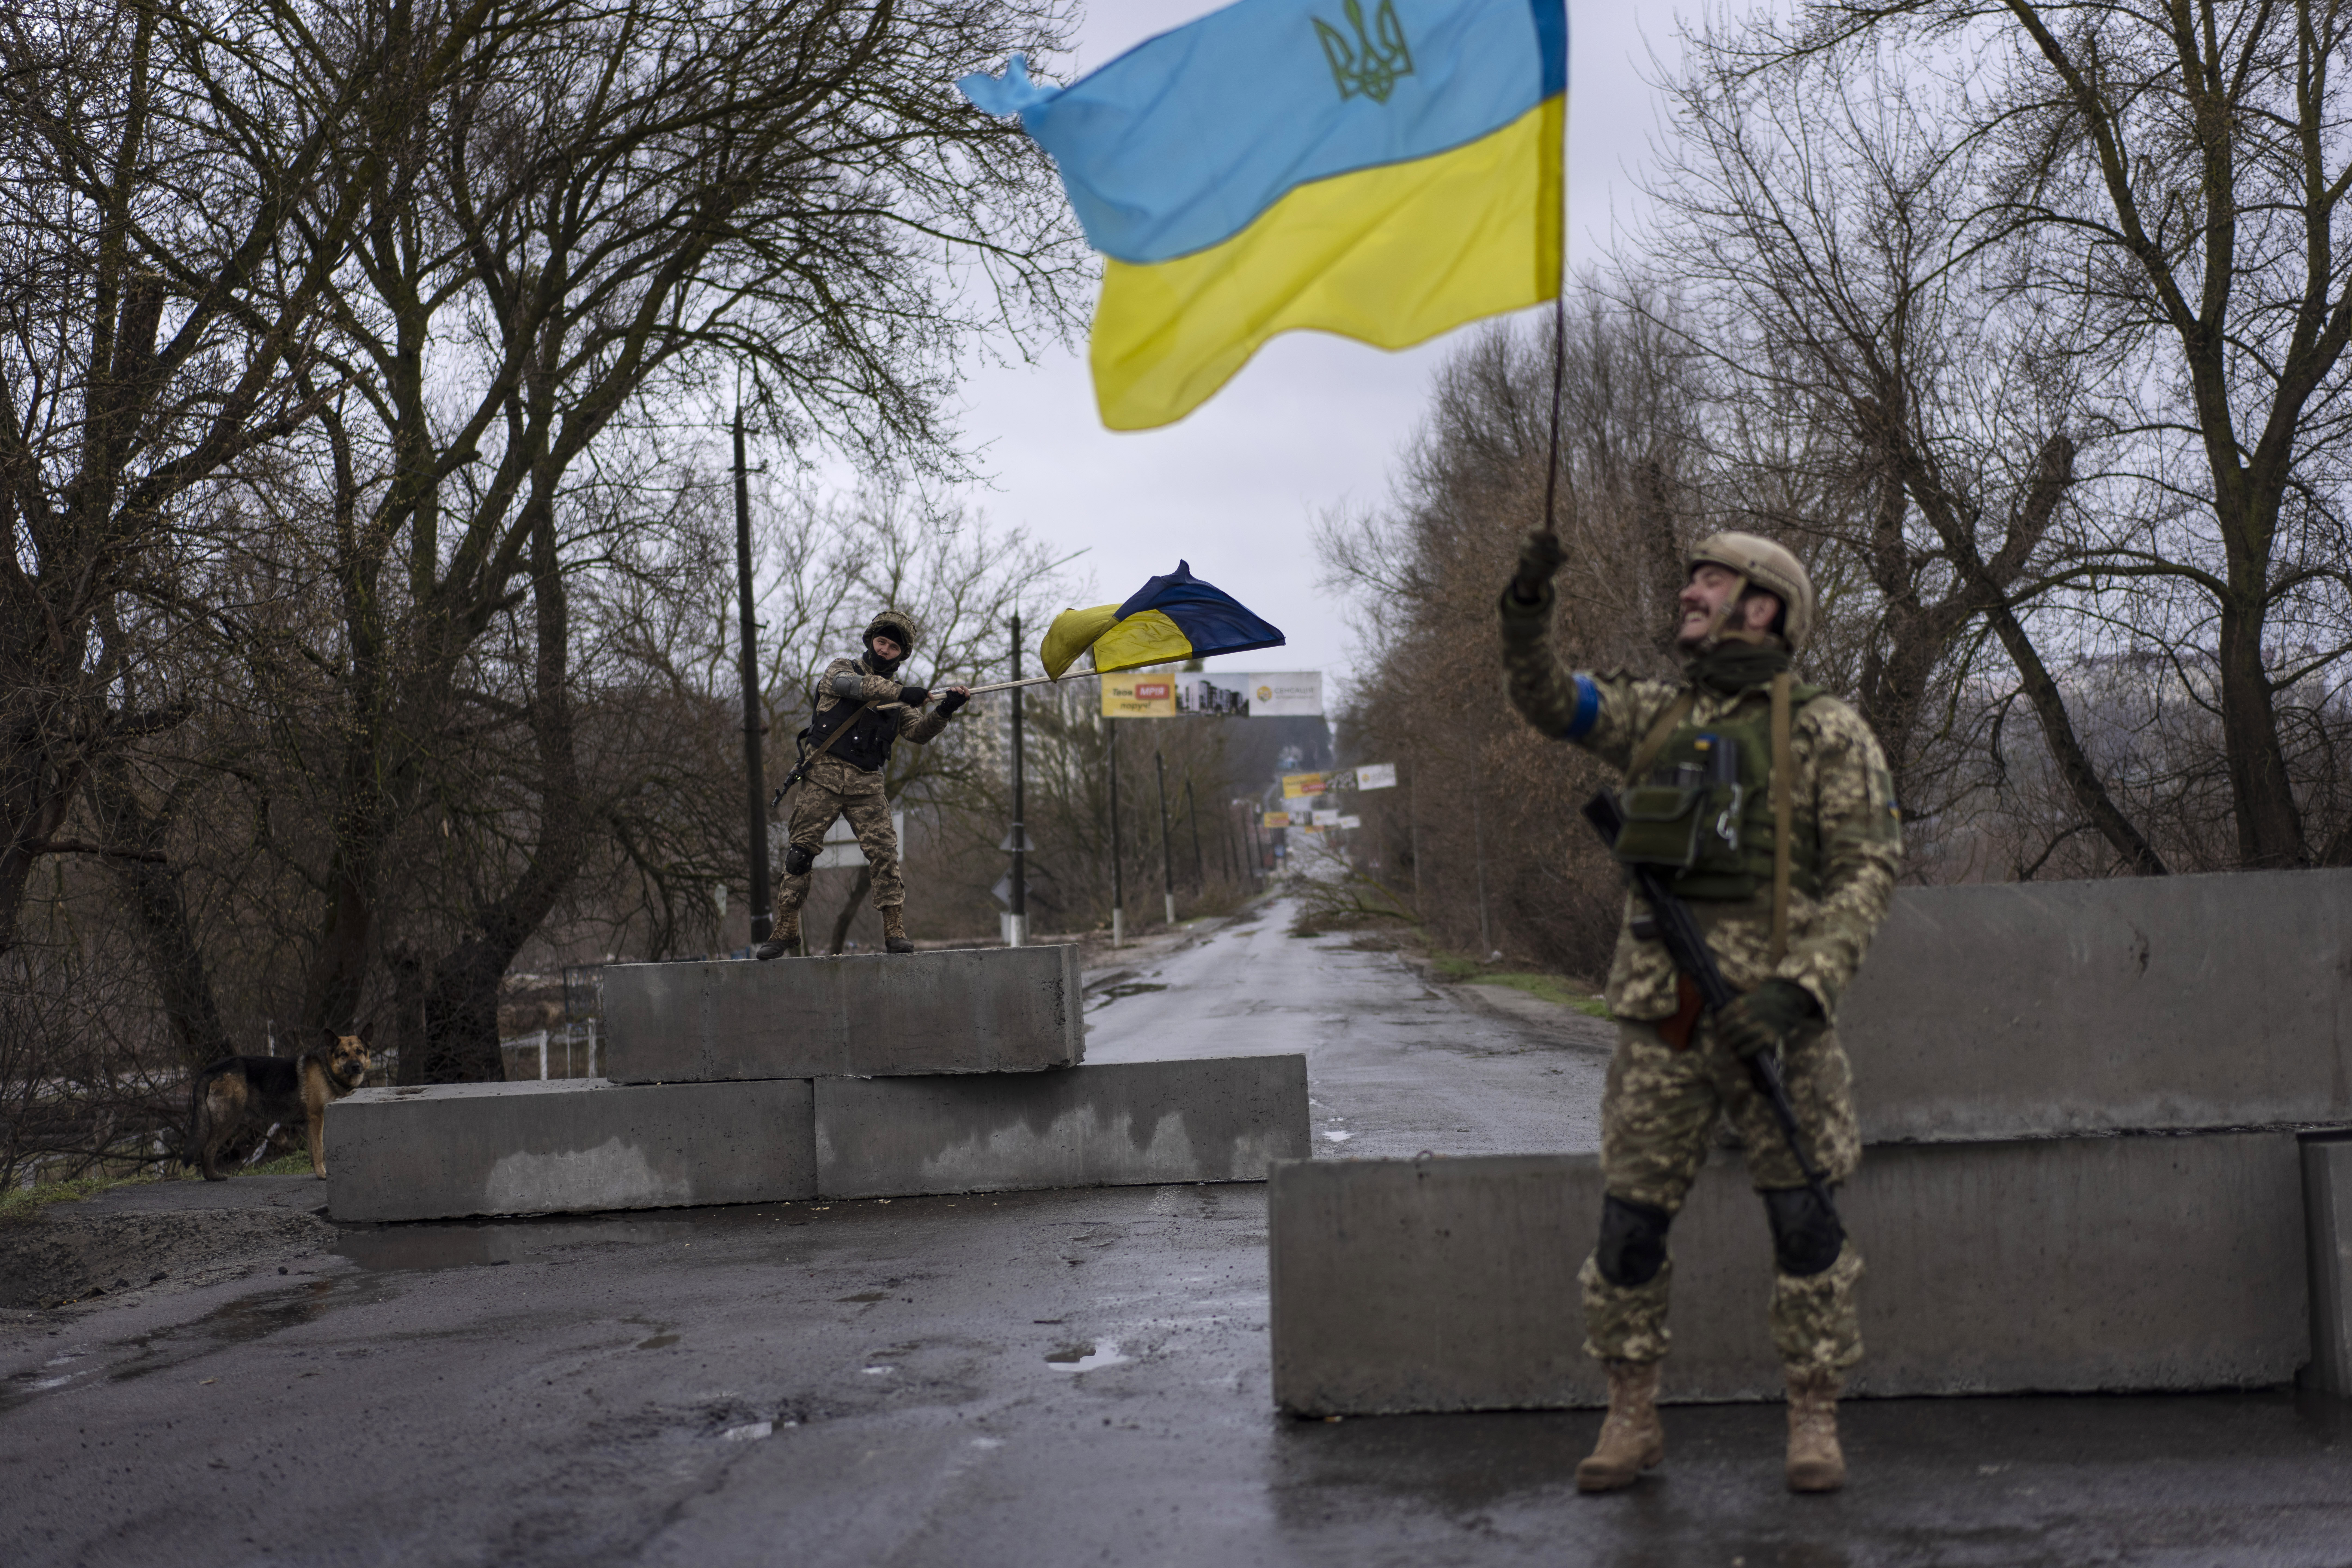 Situácia sa pre Kyjev vyvíja priaznivo, ruské sily by mohli pod tlakom „prasknúť“ a dať sa na ústup